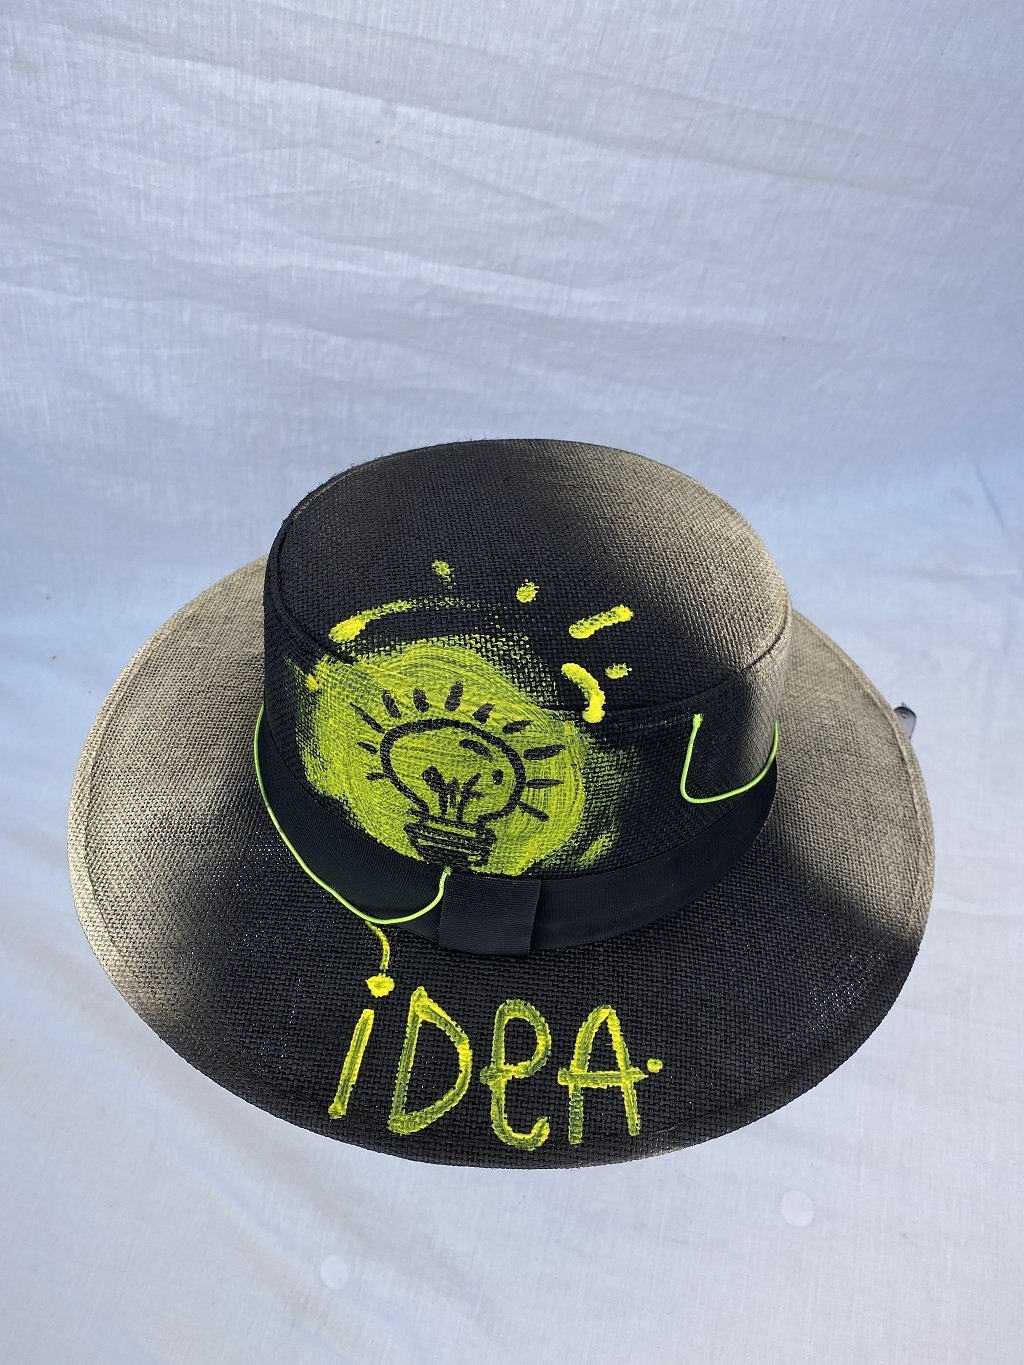 Sombrero Personalizado "Idea" Diseño De Autor, Hecho A Mano Por Artesano